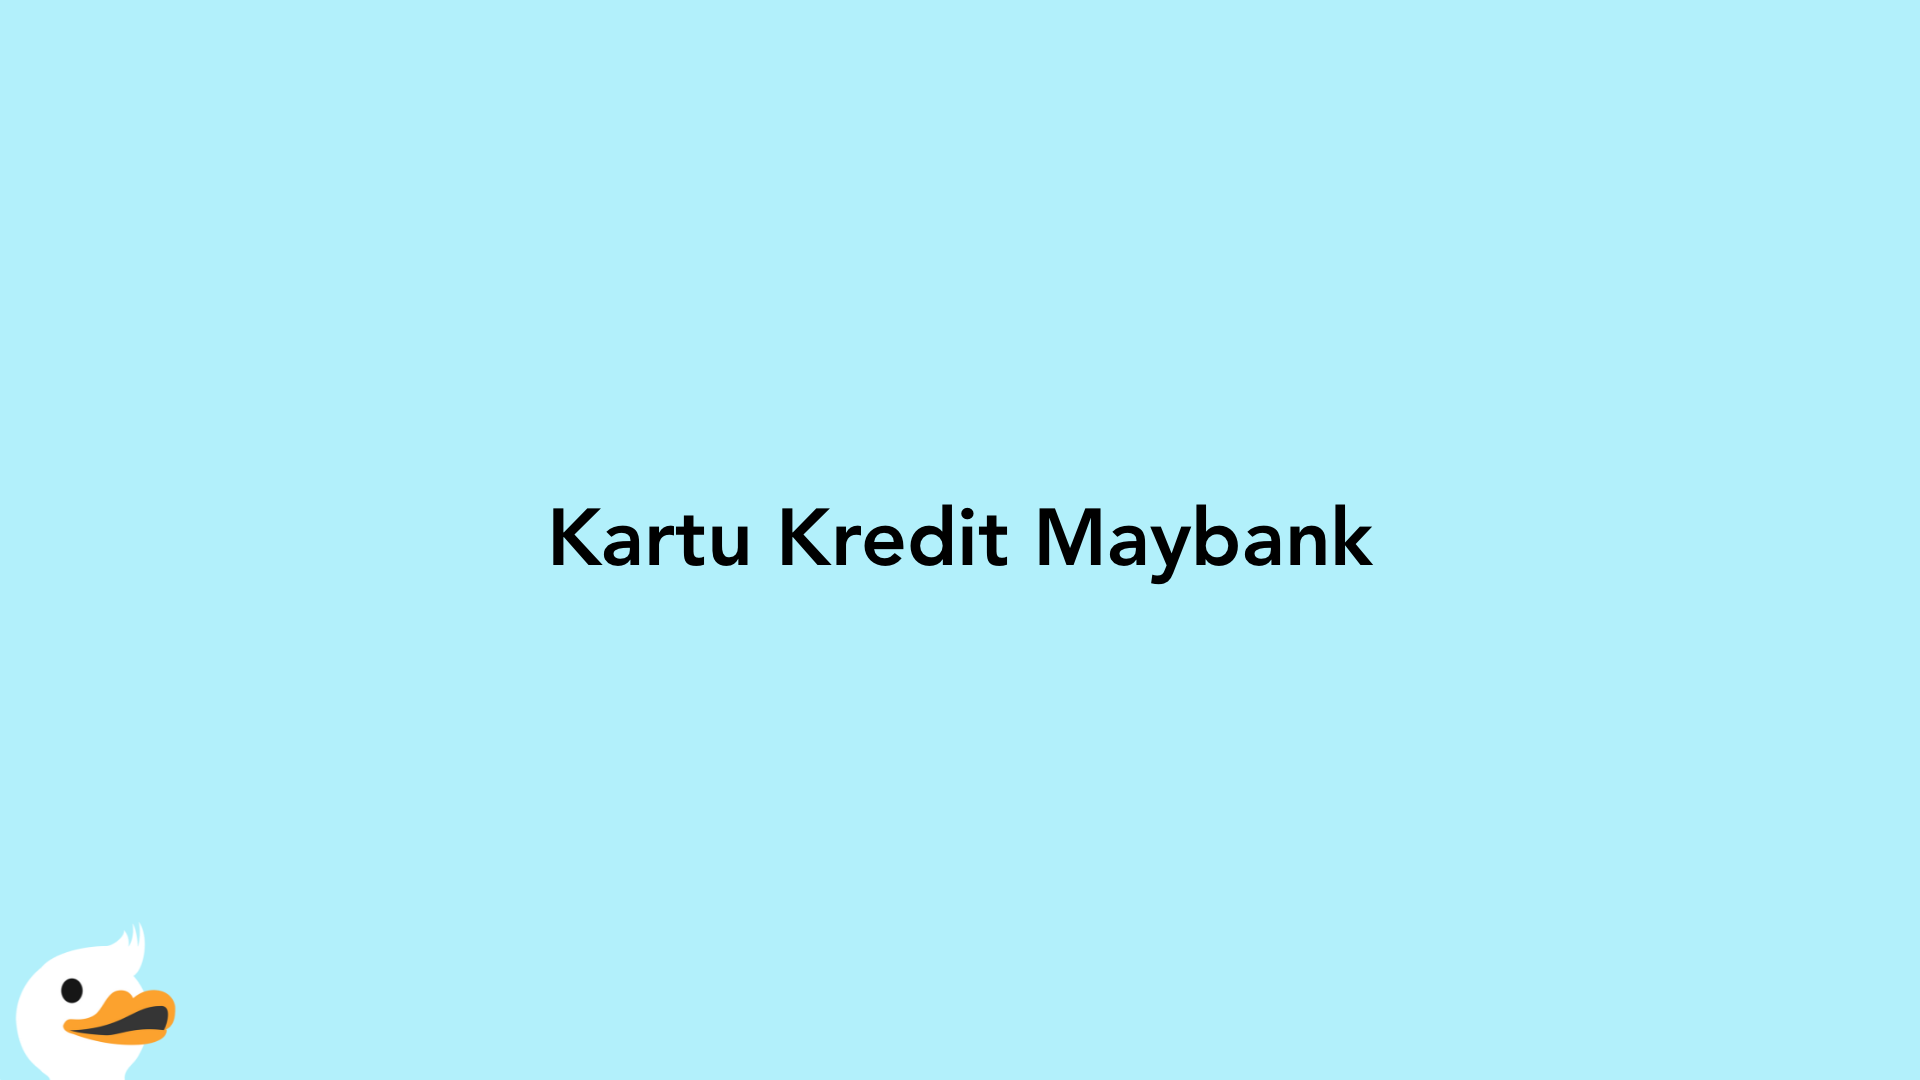 Kartu Kredit Maybank